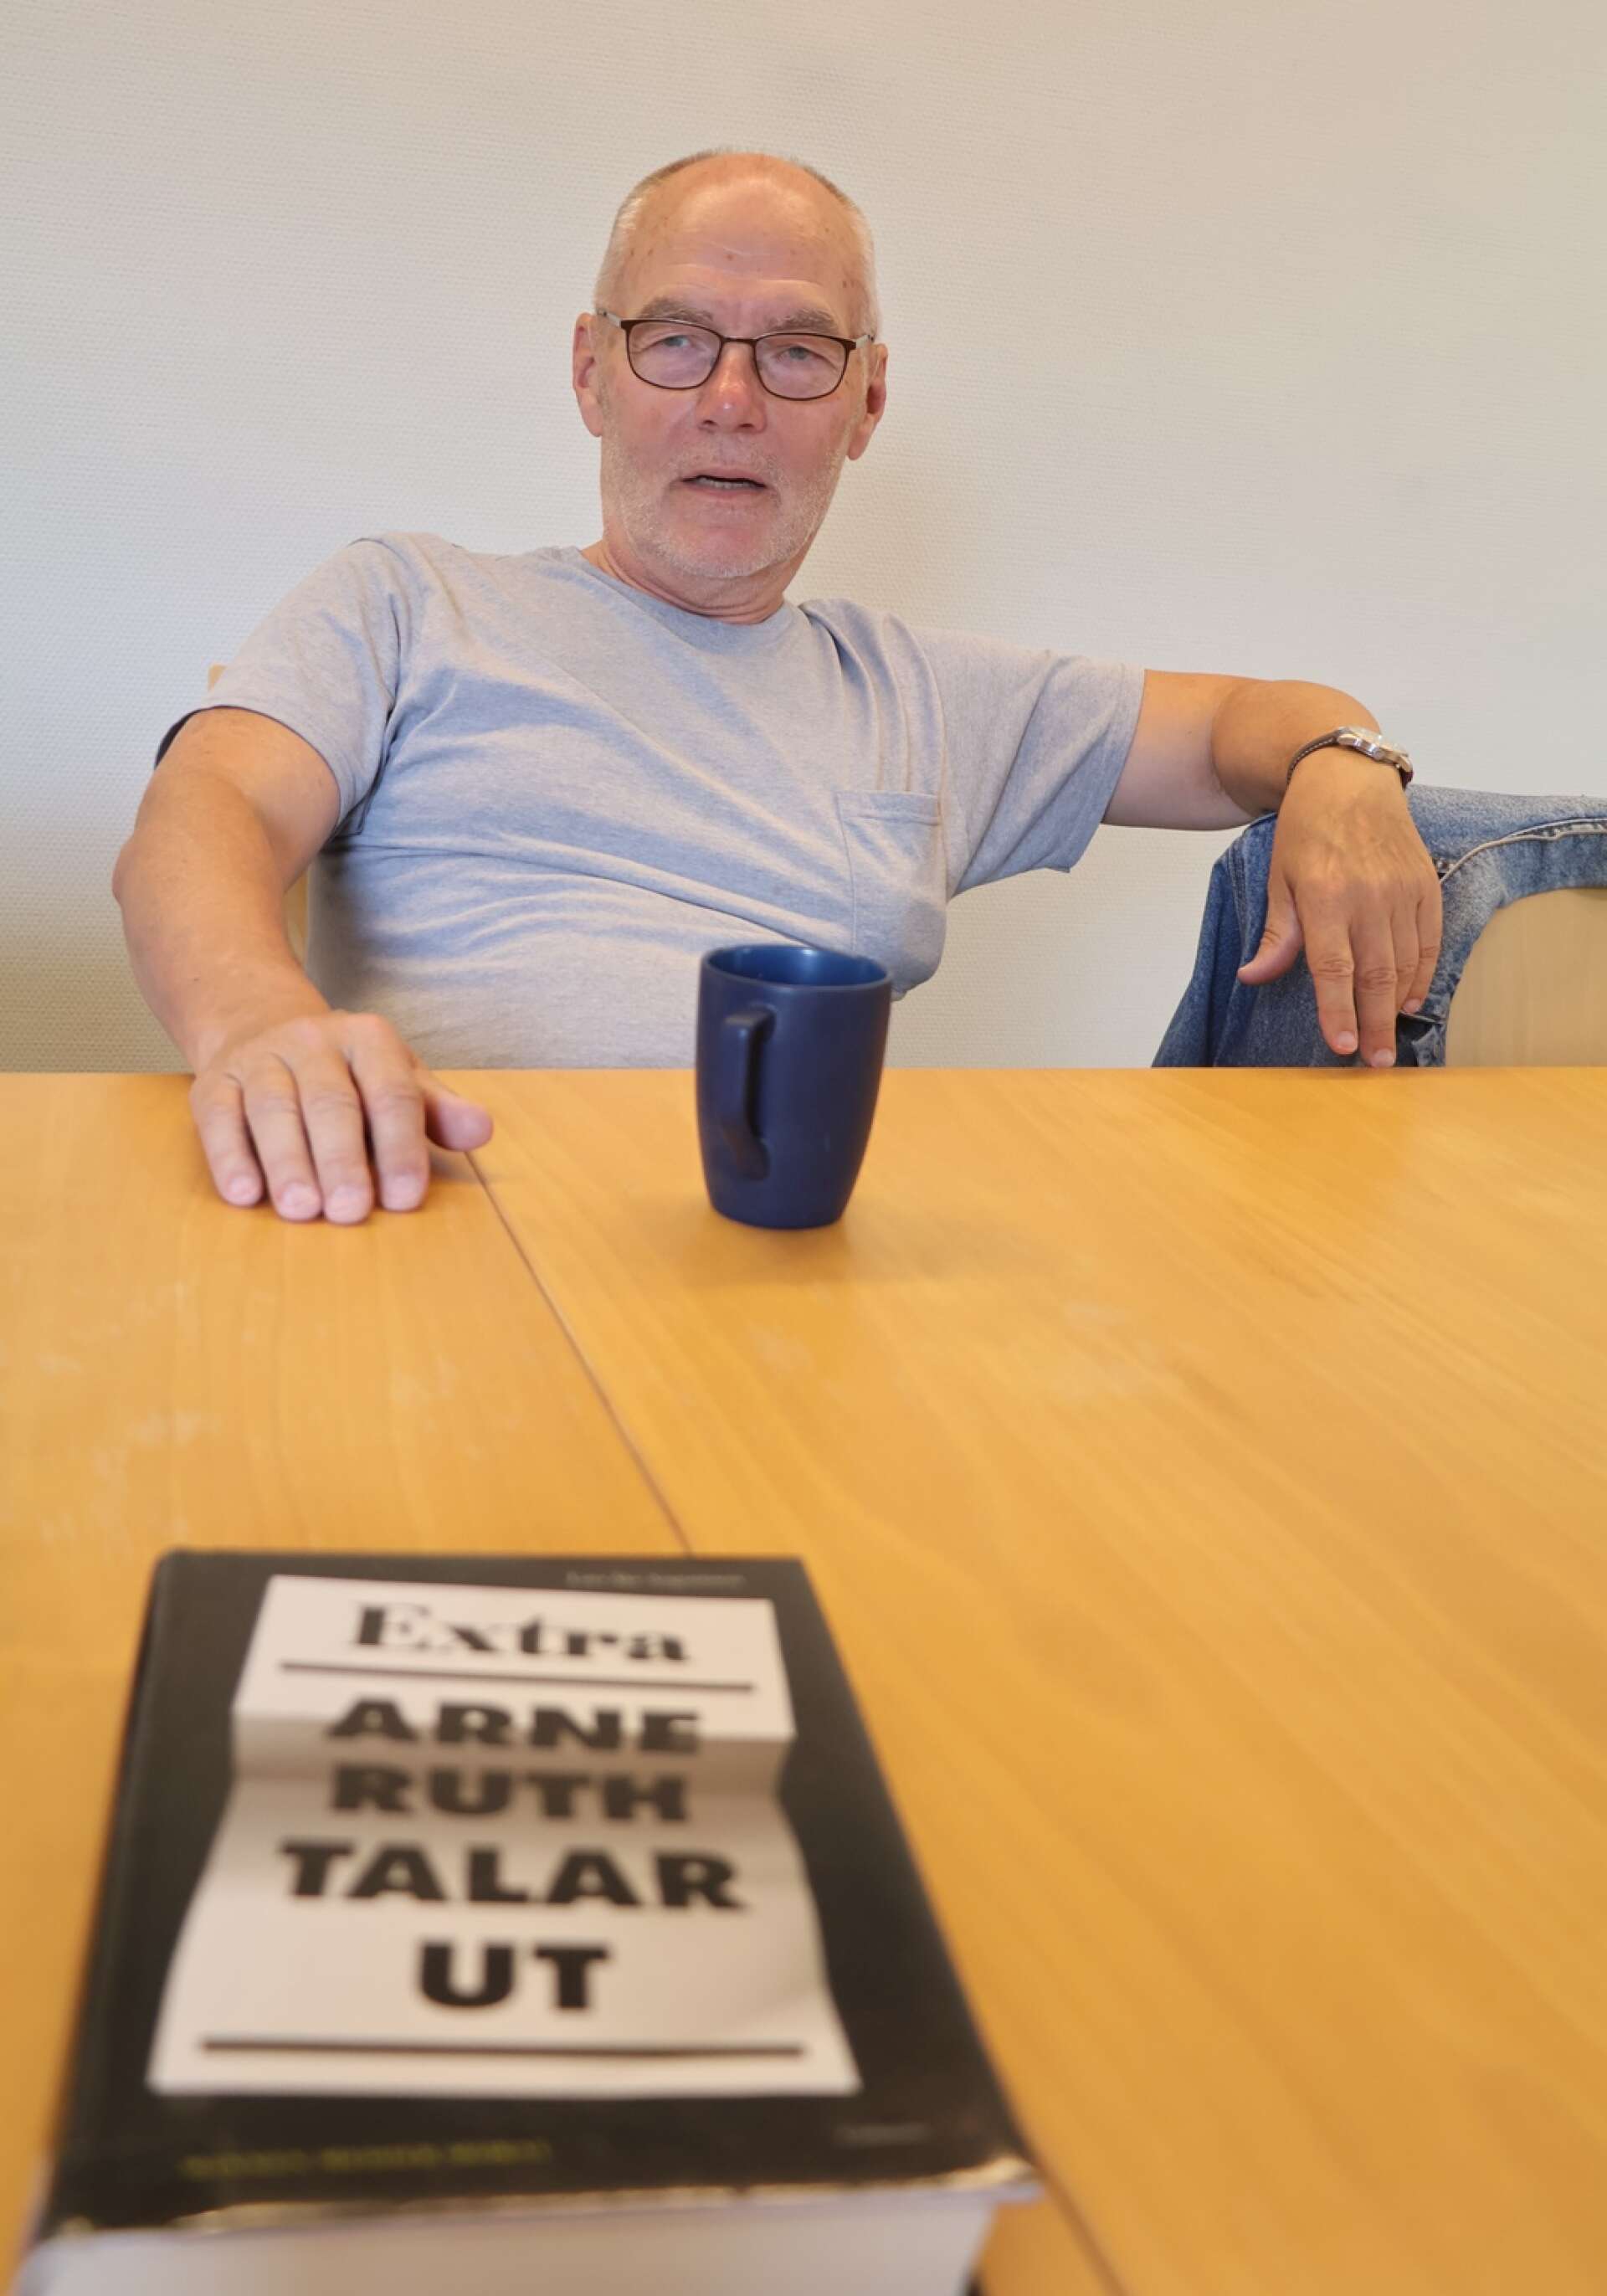 2013 skrev Lars Åke Augustsson boken ”Arne Ruth talar ut”, som handlar om en annan känd författare och journalist från Bengtsfors.